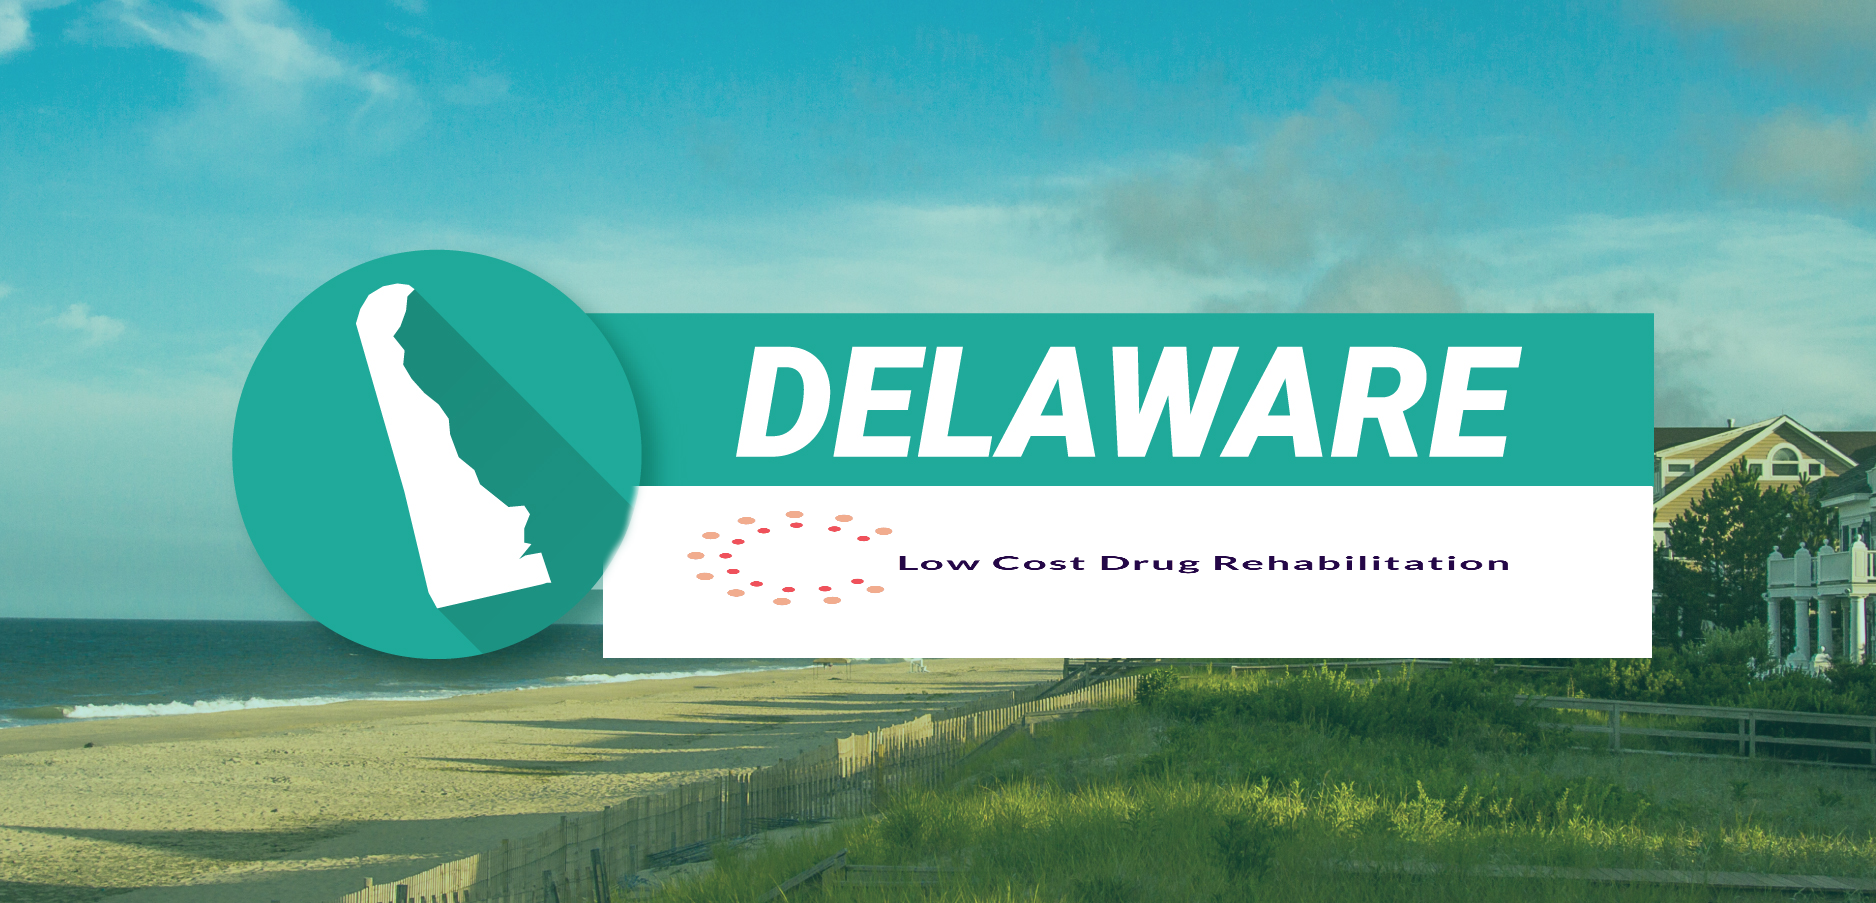 Delaware Drug & Alcohol Rehab-Low Cost Drug Rehab-Drug Rehab Near Me